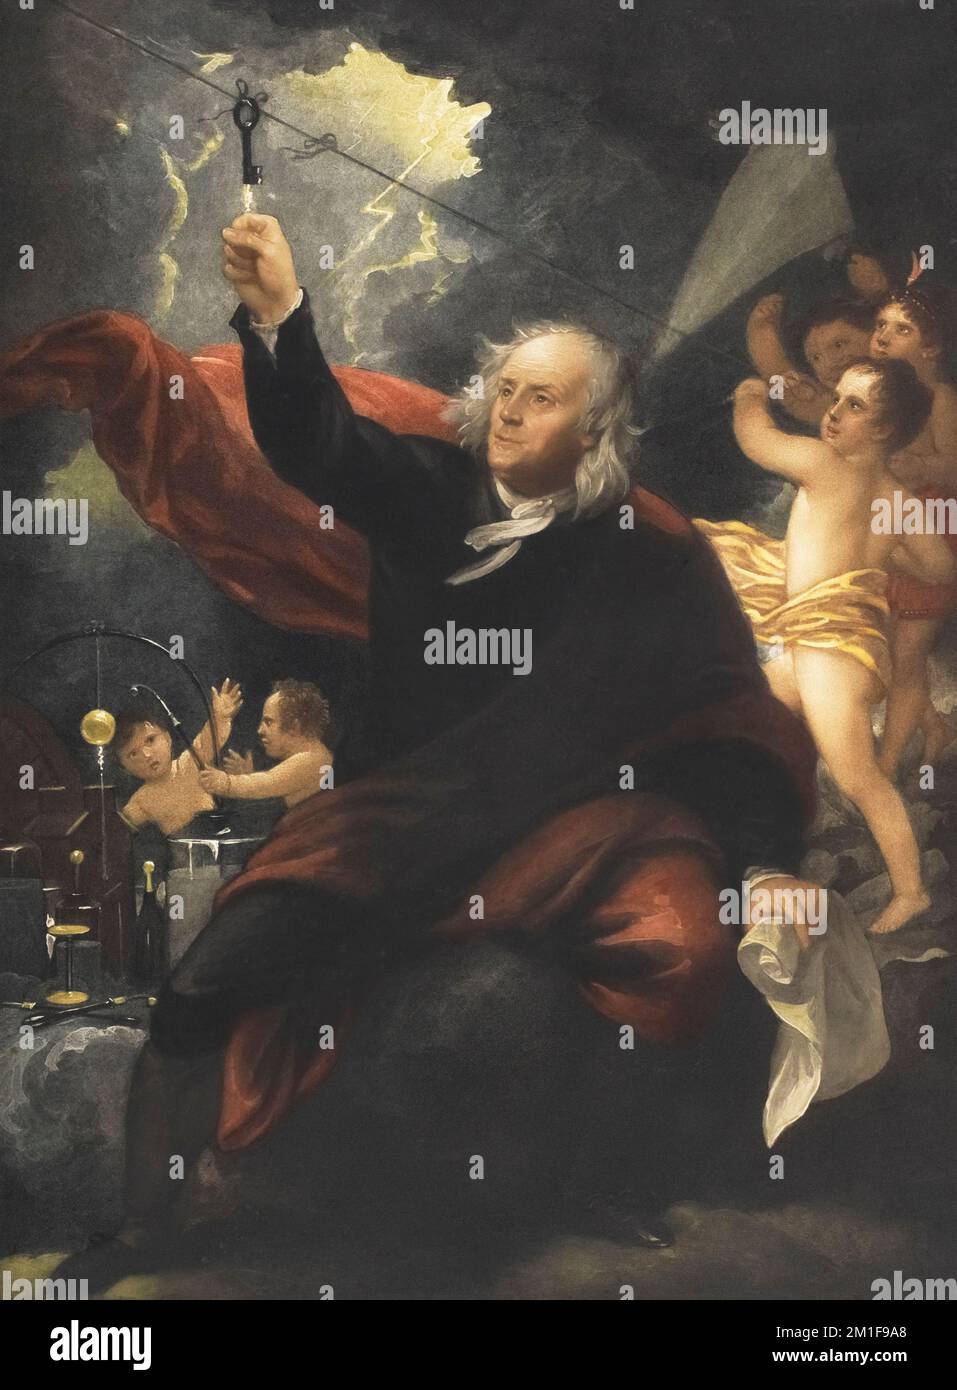 Romantisiertes Gemälde von Benjamin Franklin's Experiment von 1752, als er einen Schlüssel an einem Drachen in ein Gewitter flog, um zu zeigen, dass Blitze Elektrstadt waren. Nach dem Gemälde von Benjamin West. Stockfoto